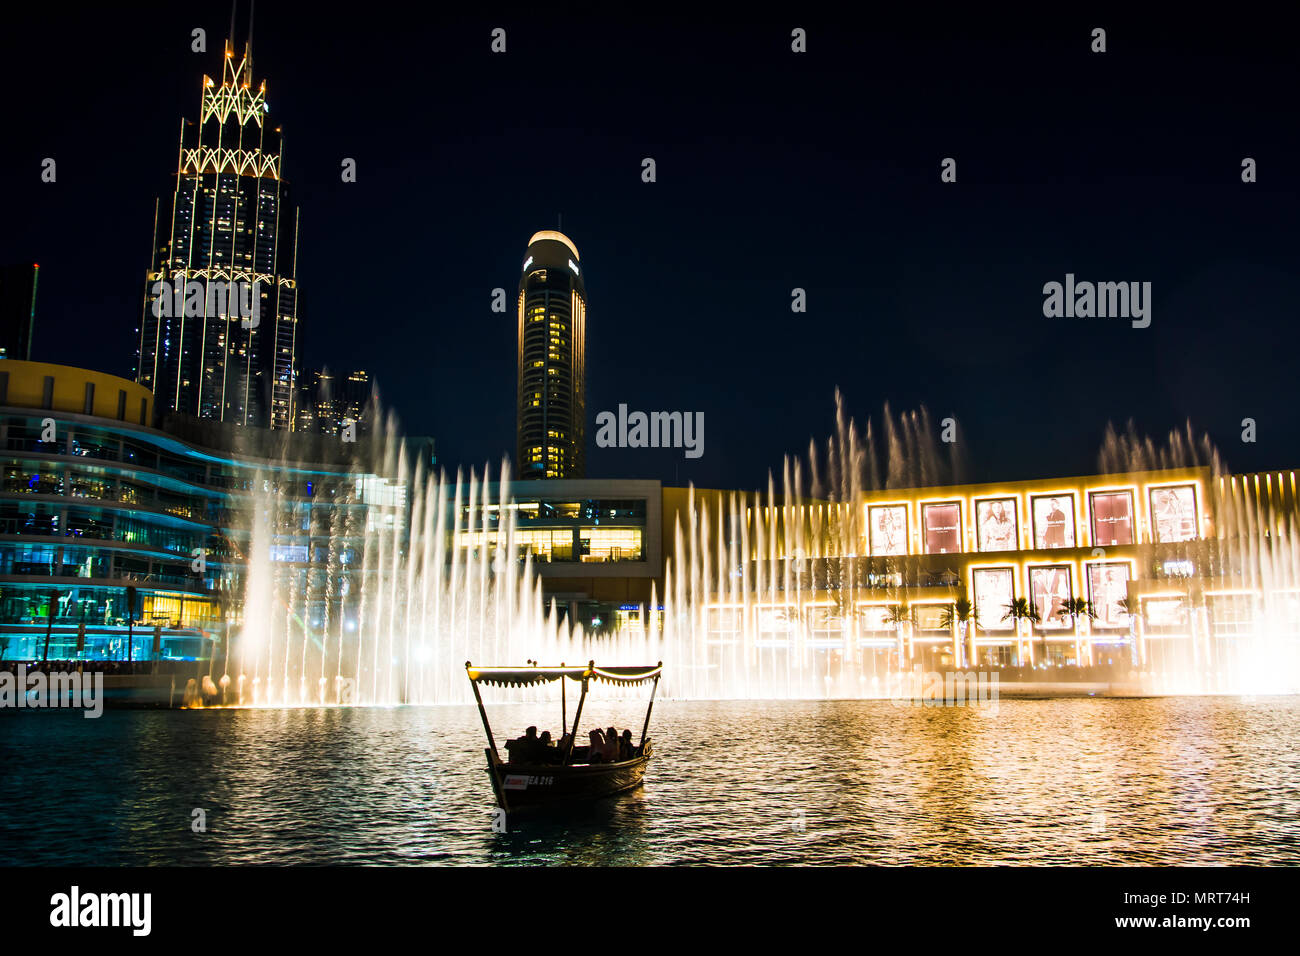 Dubai, Emiratos Árabes Unidos - Febrero 5, 2018: Dubai fountain show en la noche, lo cual atrae a muchos turistas cada día. La fuente de Dubai es el mundo Foto de stock